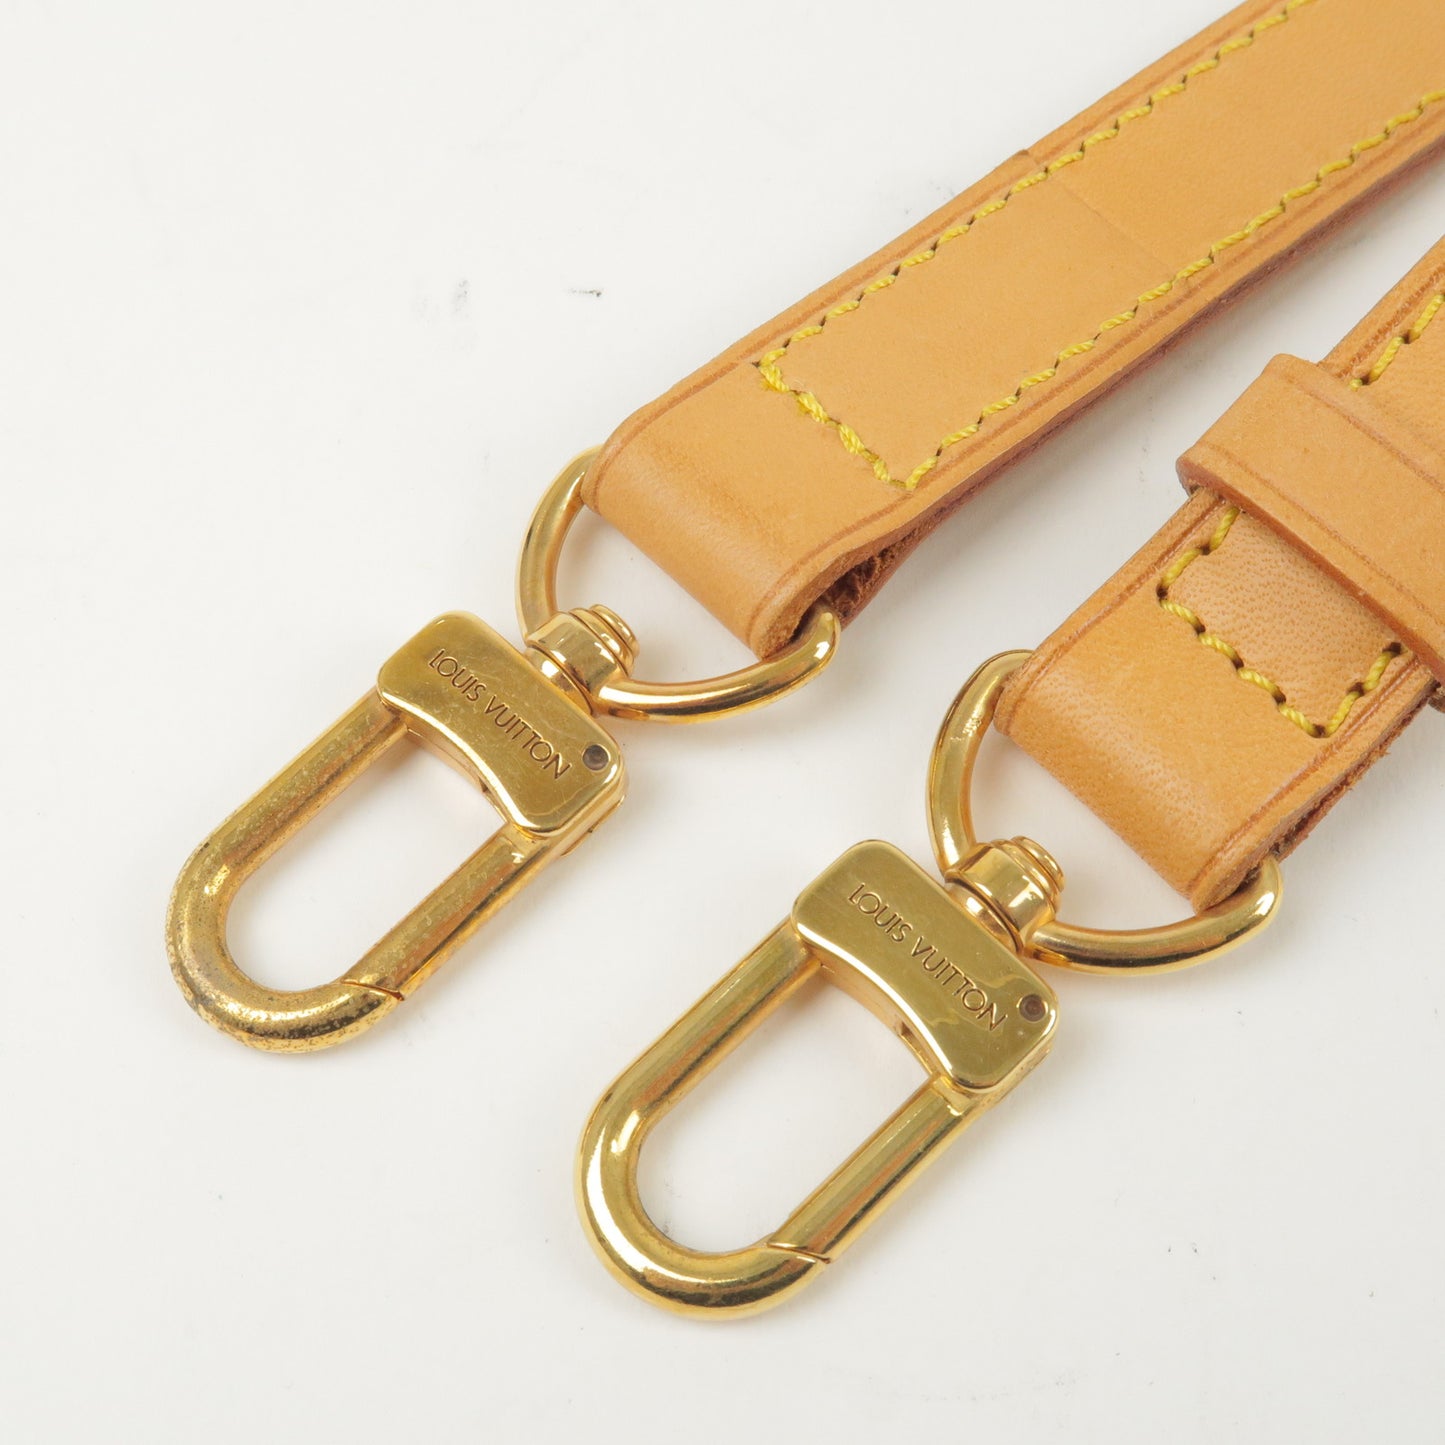 Louis Vuitton Leather Shoulder Strap Beige Adjustable 86-104 cm